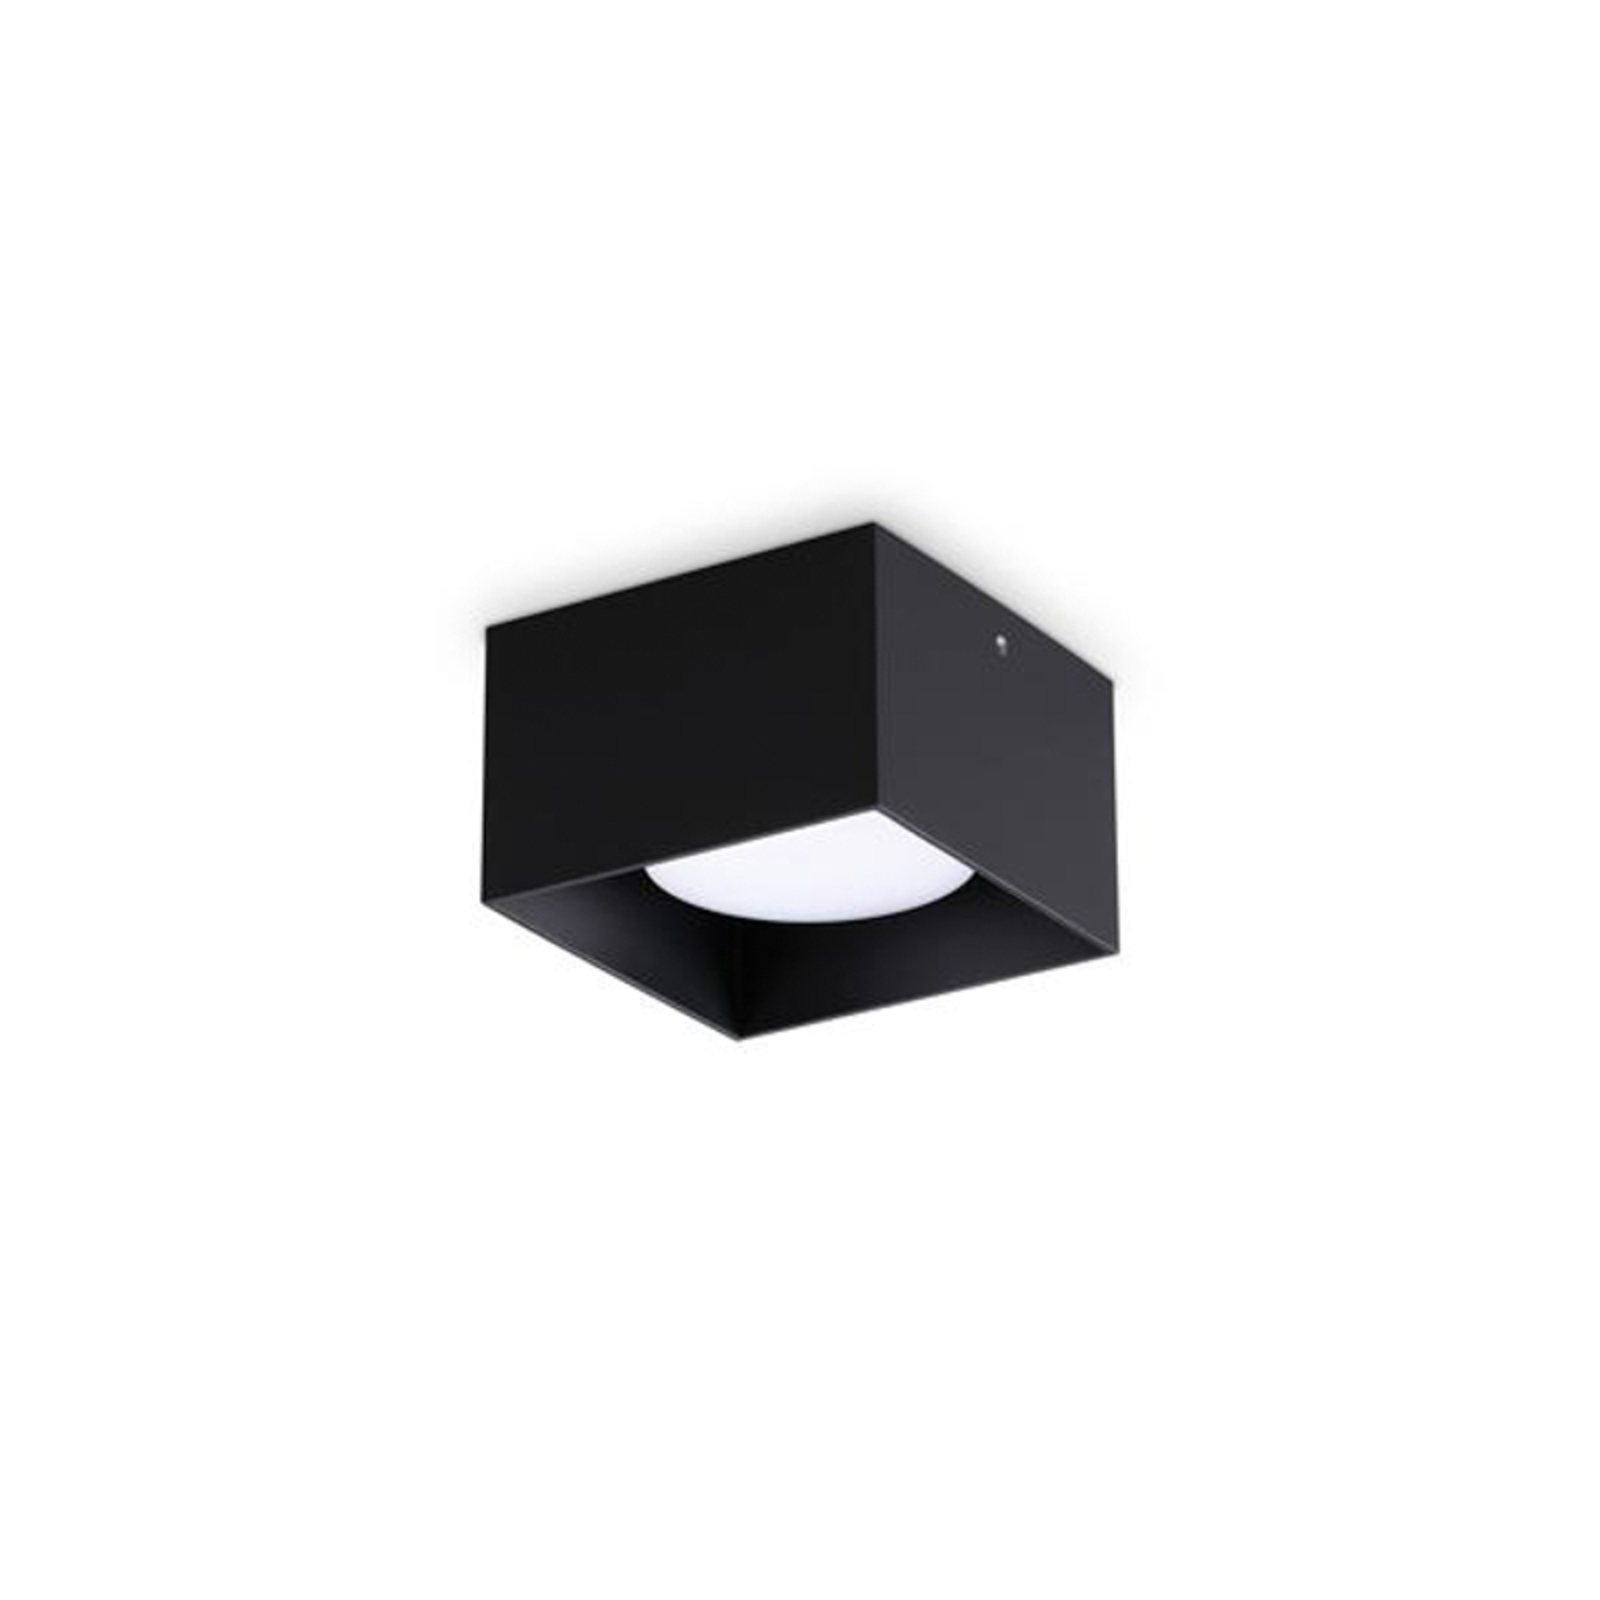 Ideal Lux Spike Square downlight, black, aluminium, 10 x 10 cm